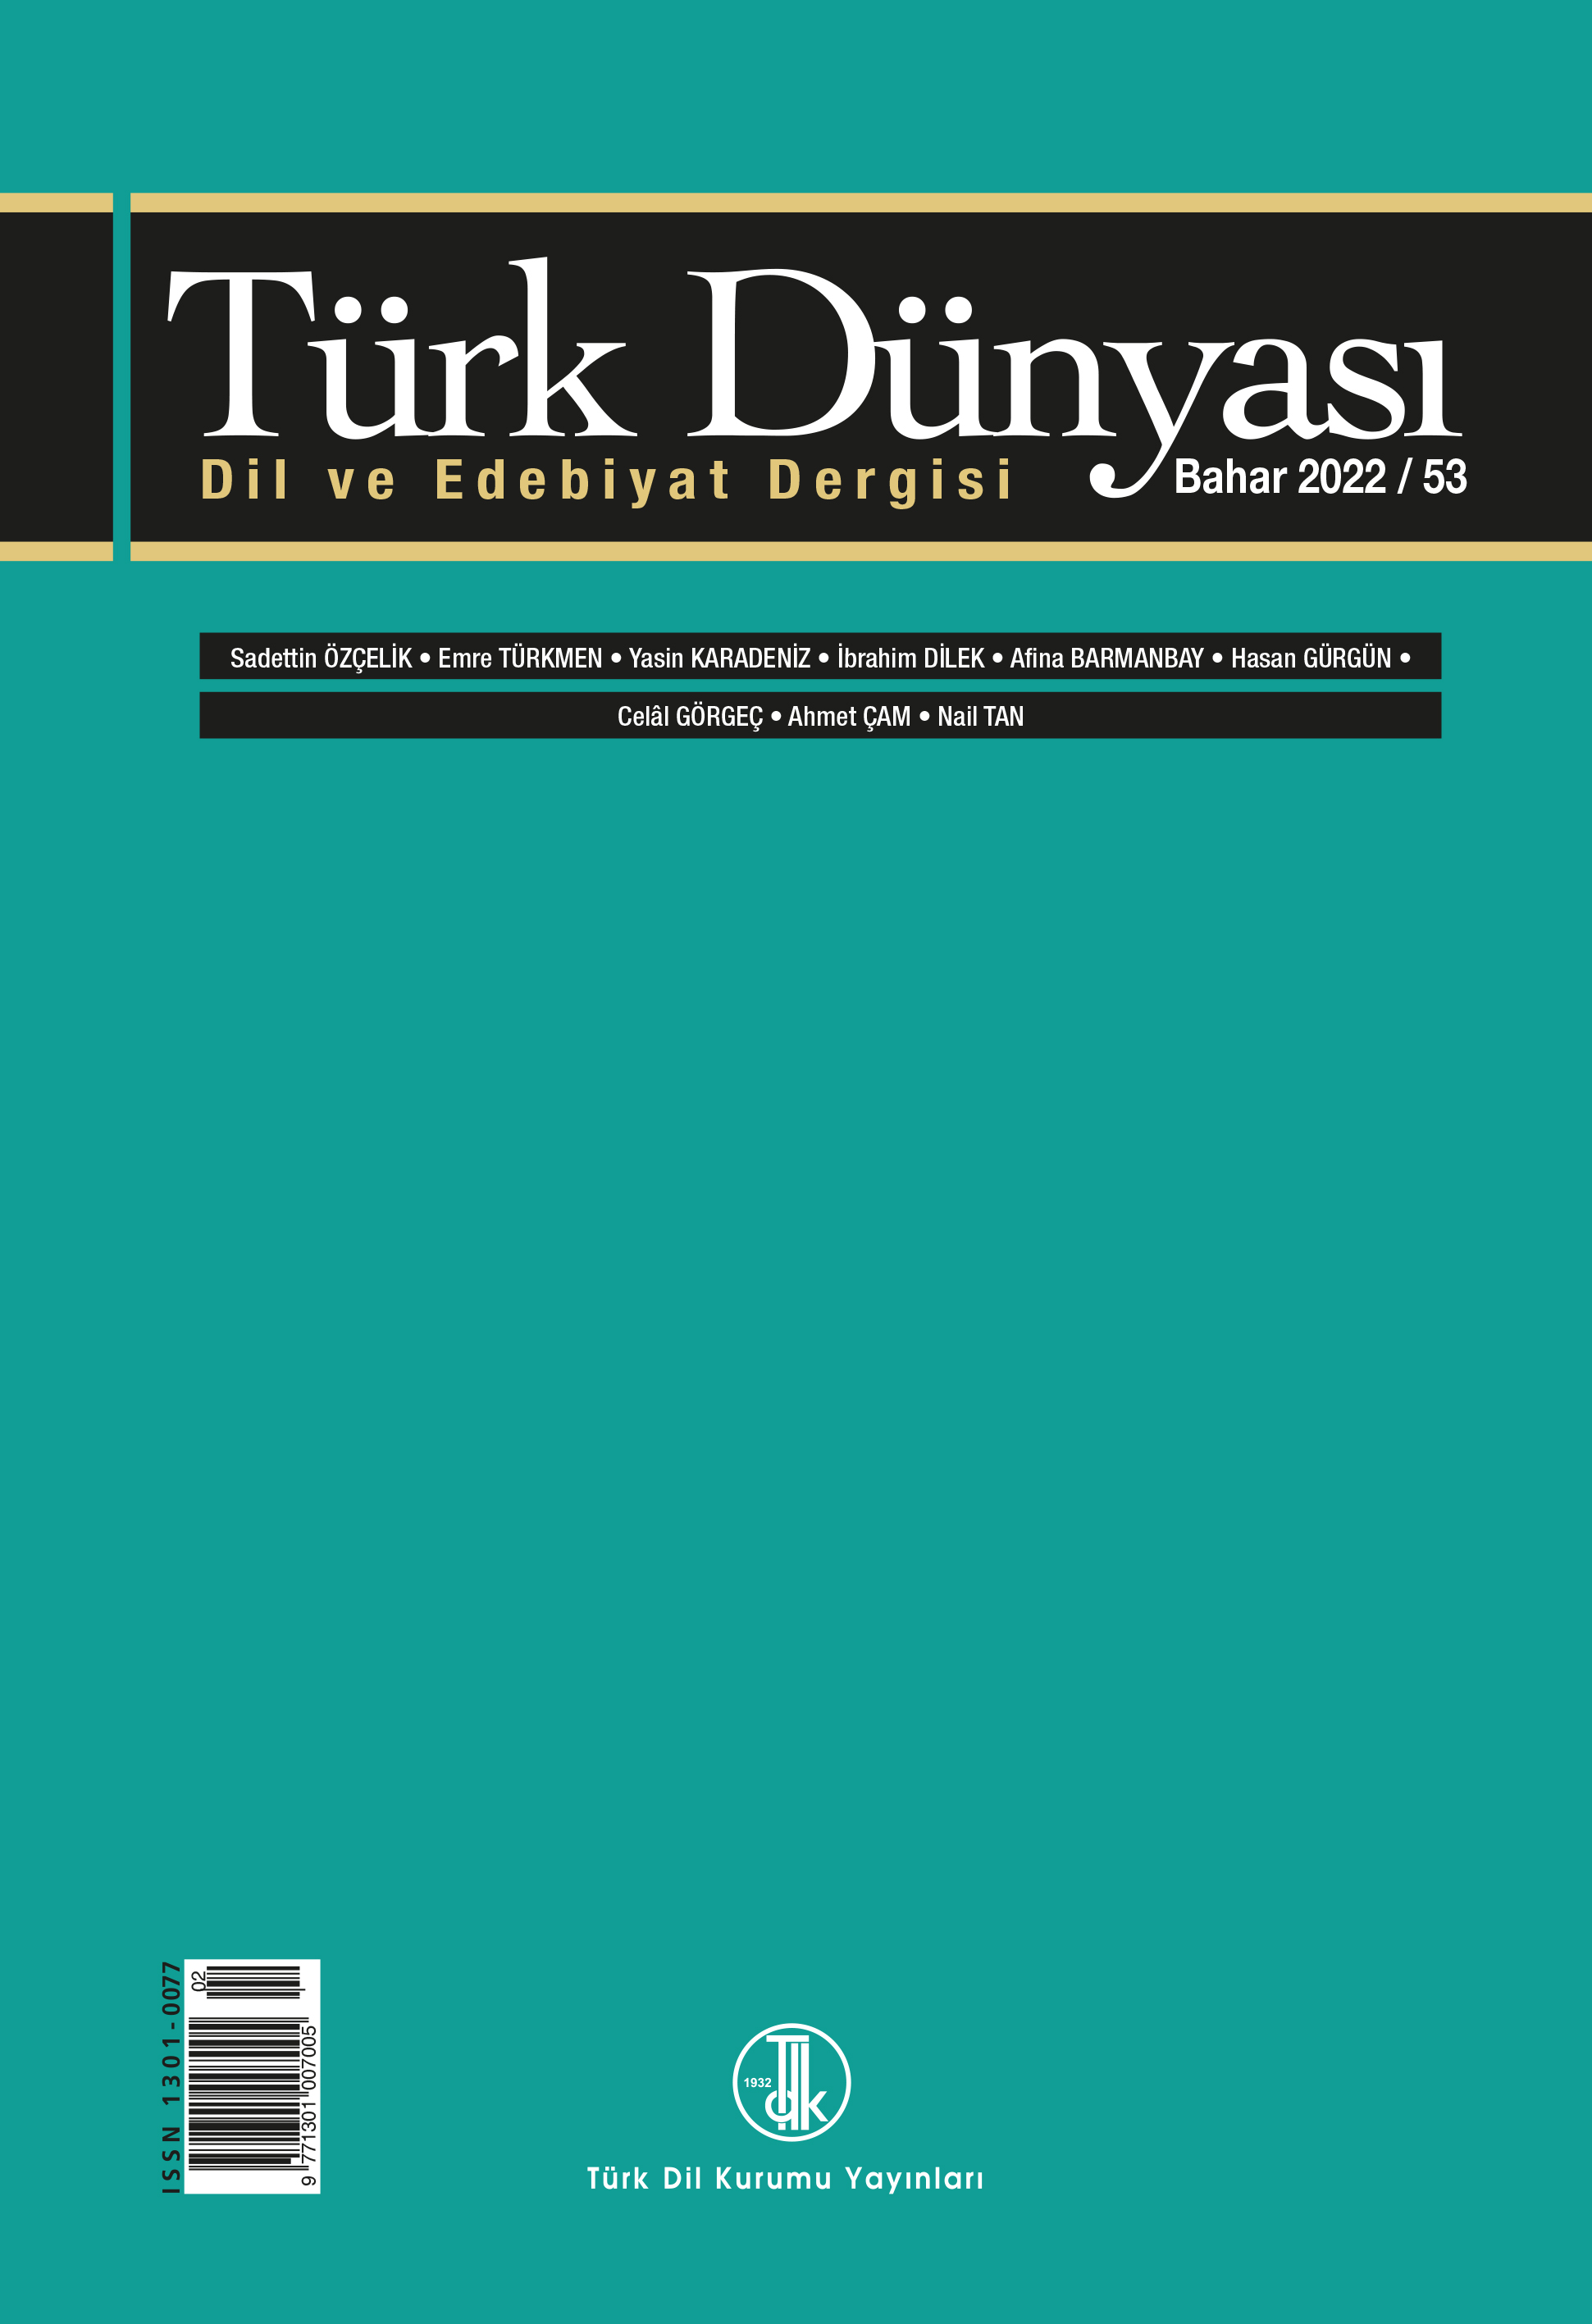 Türk Dünyası Dil ve Edebiyat Dergisi Bahar 2022 53. sayı, 2022